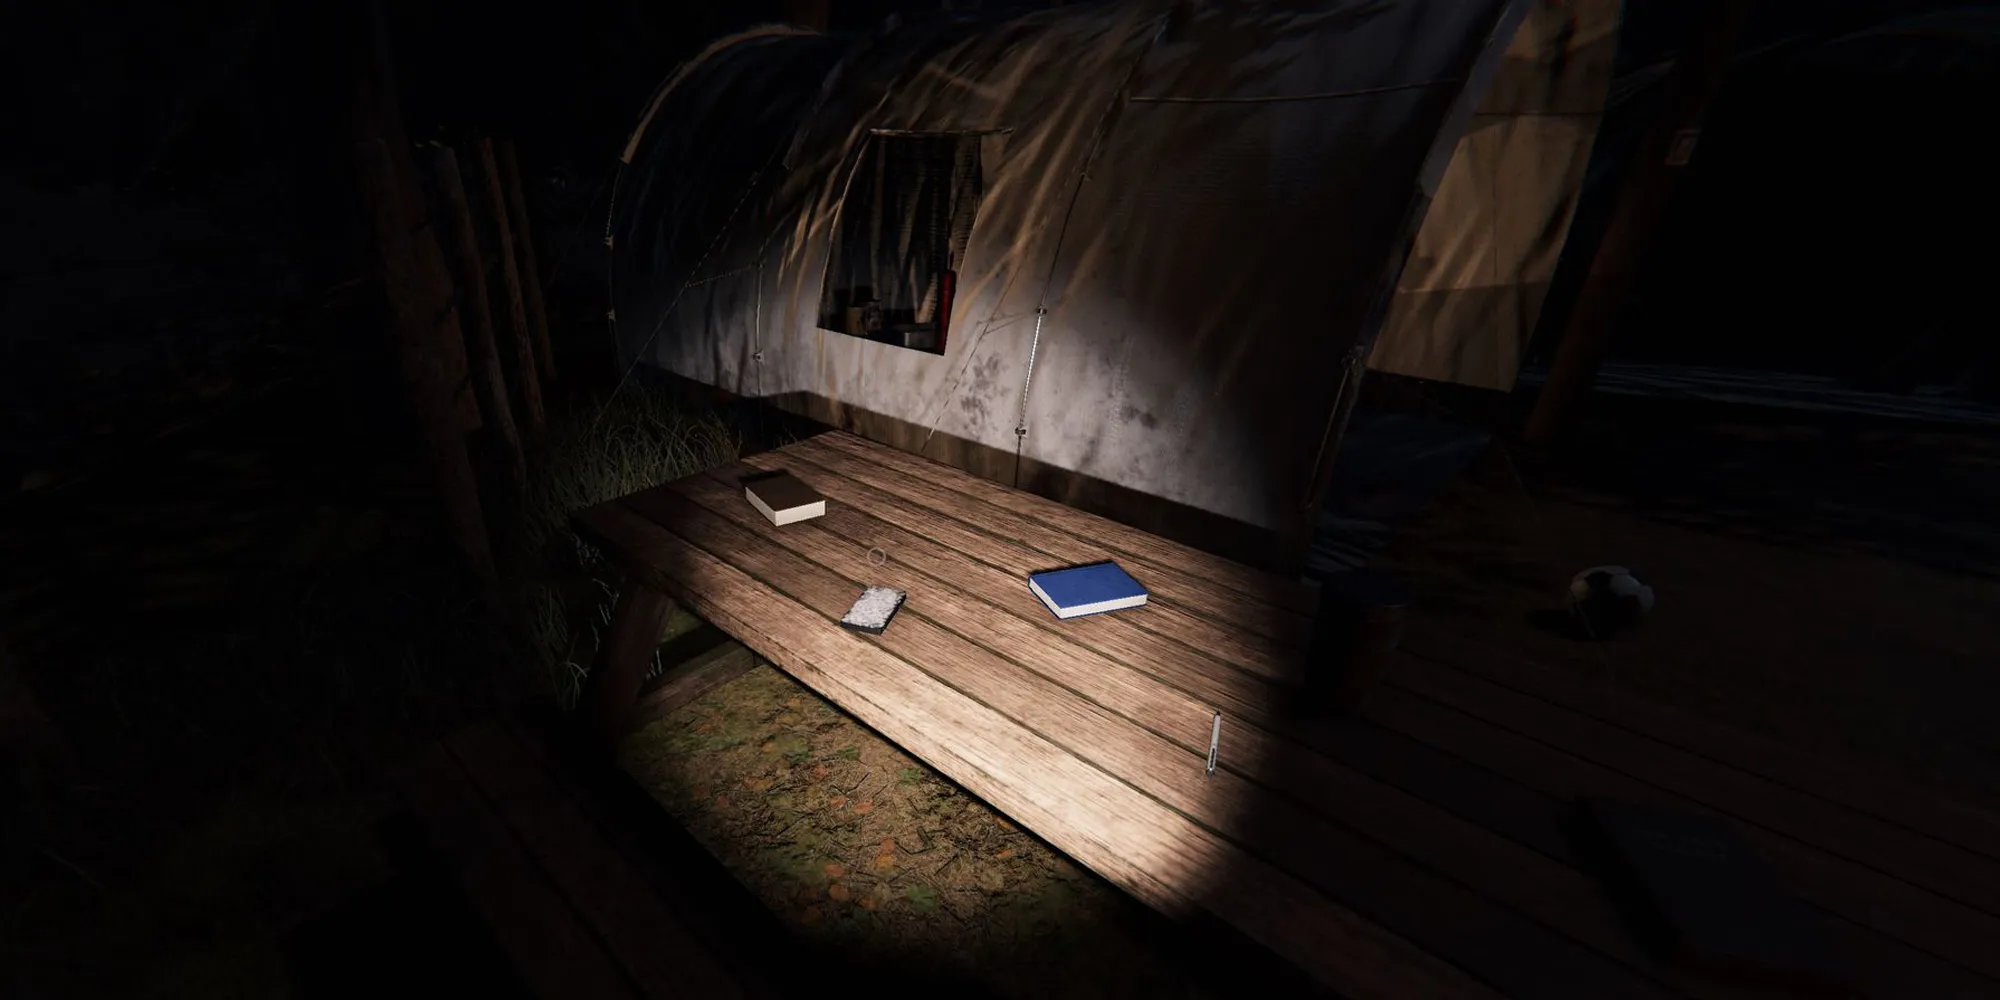 画面显示了风木露营地中一个木制野餐长凳上放着一副塔罗牌和一些蓝色书籍。